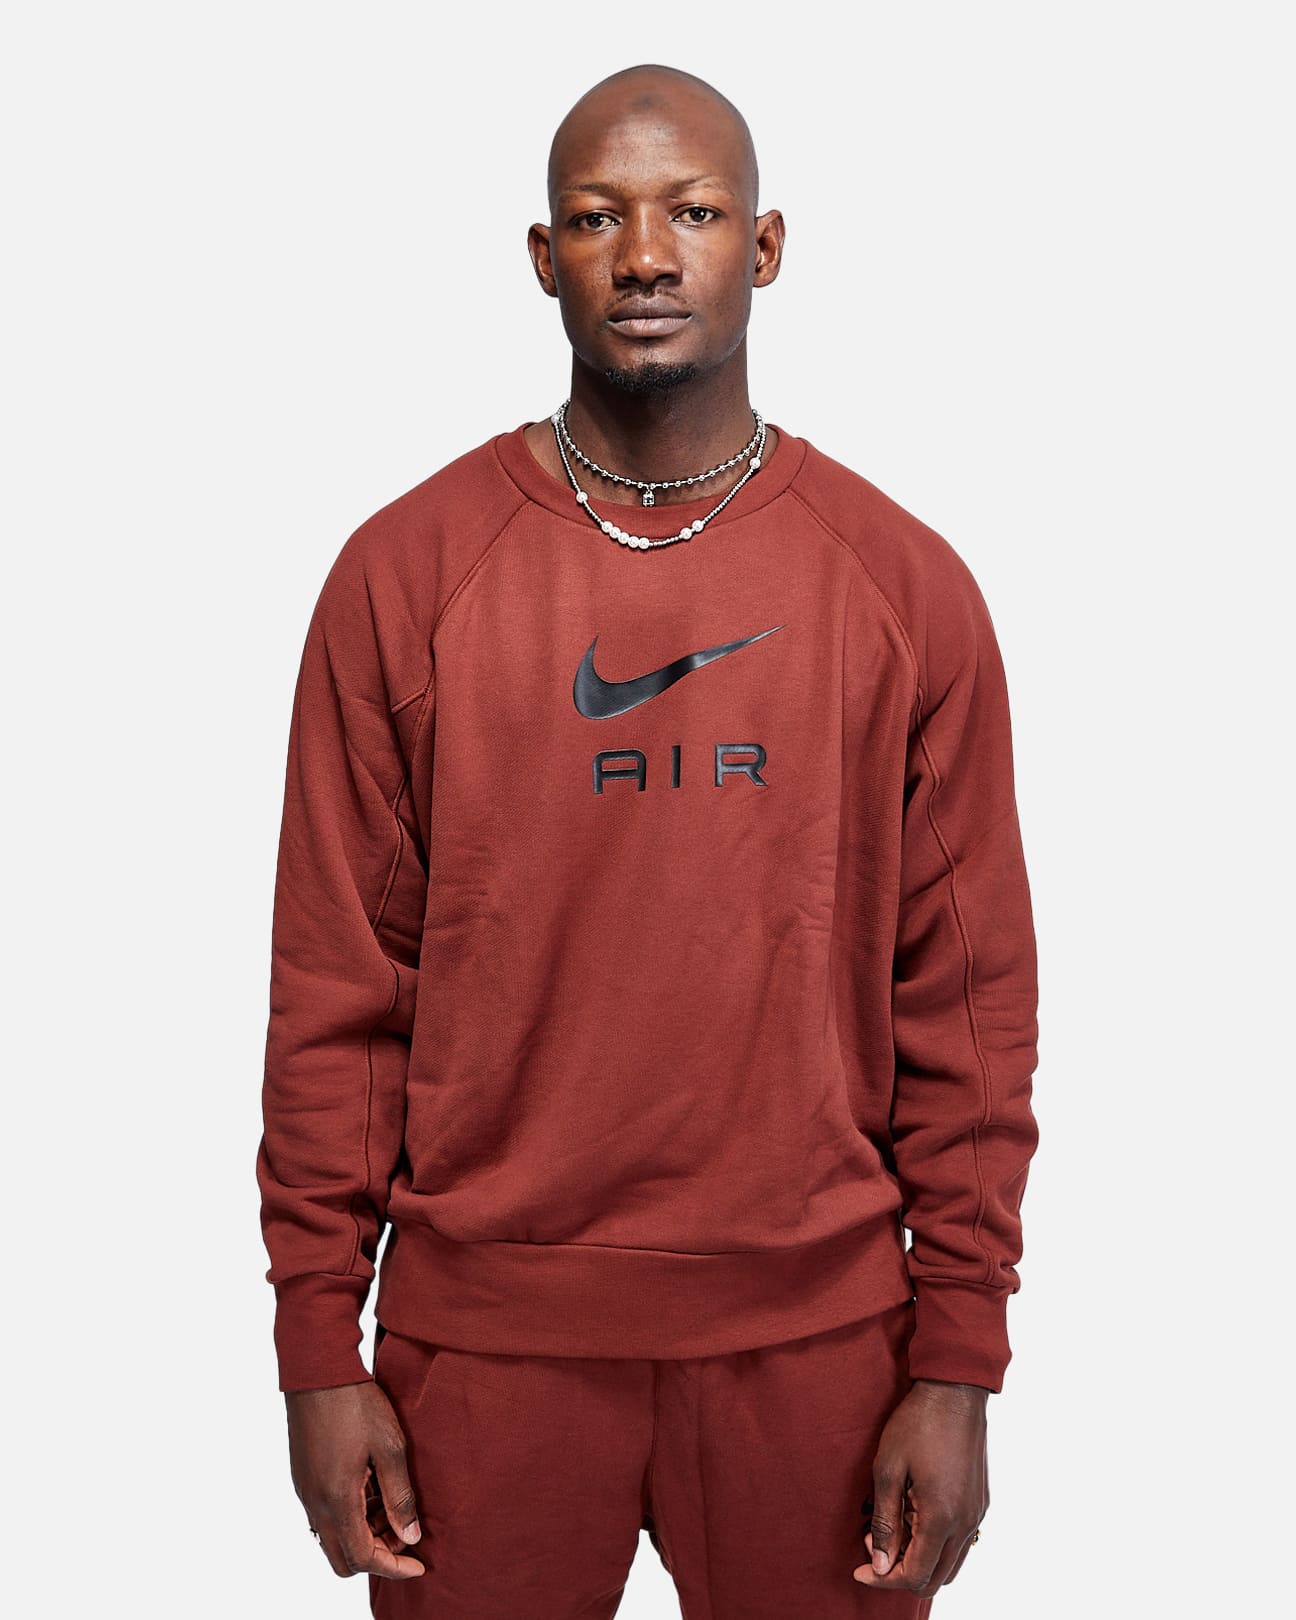 Nike Air Sweatshirt - Brown/Black